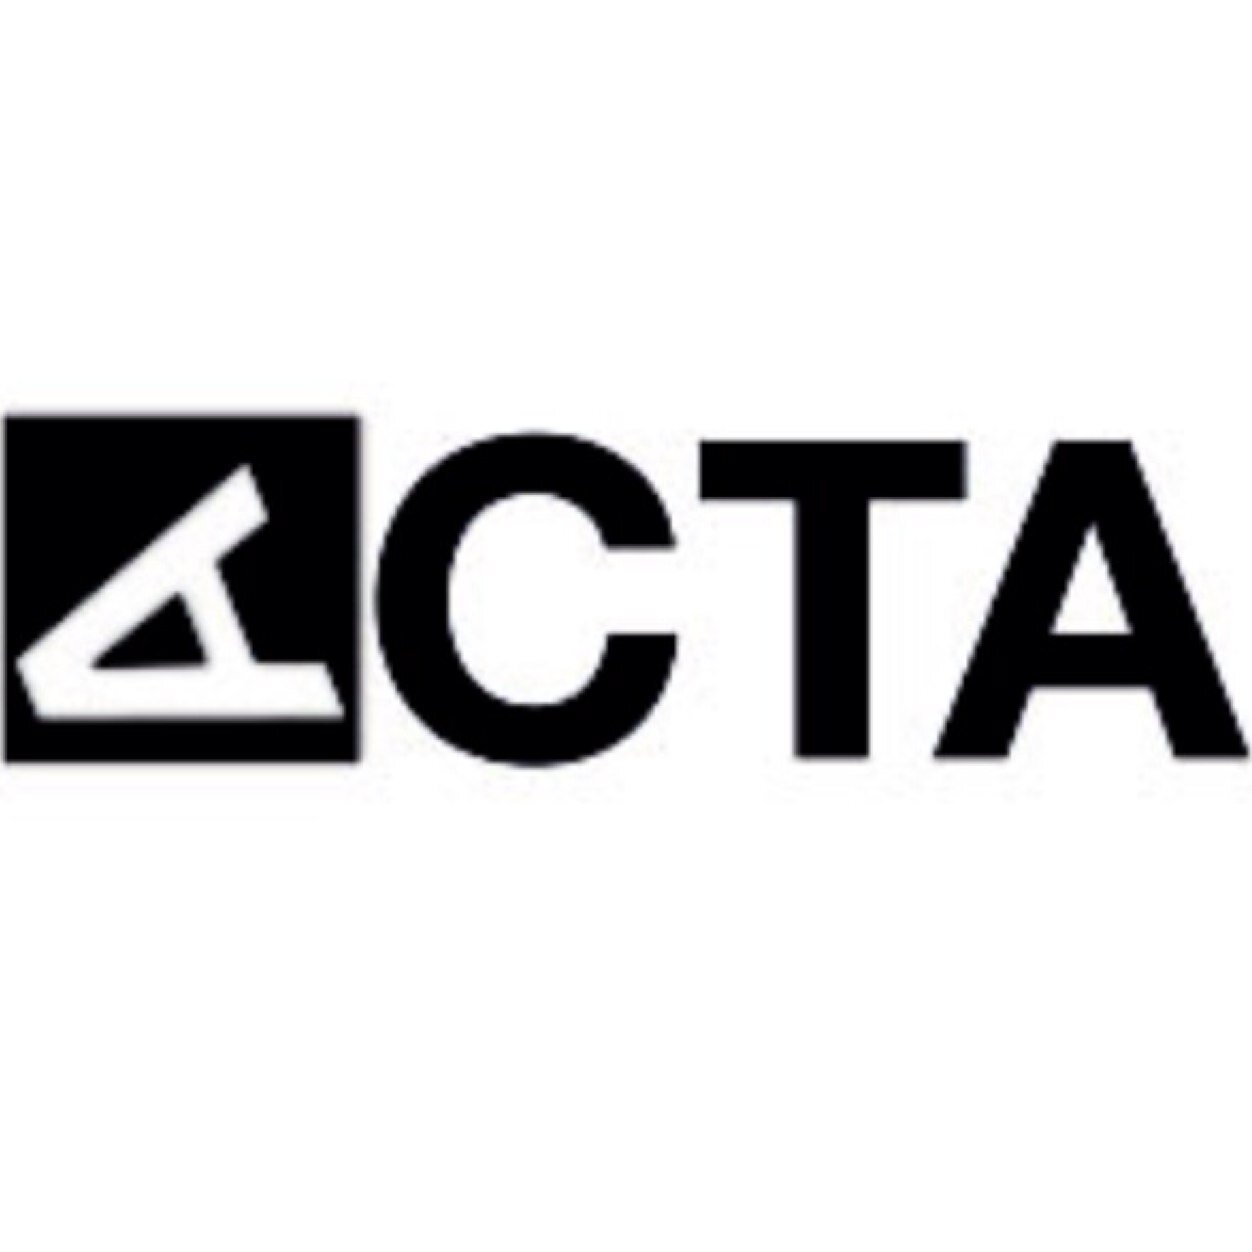 Benviguts a ACTA. Assessorament i Comunicació en la Terminologia Administrativa.